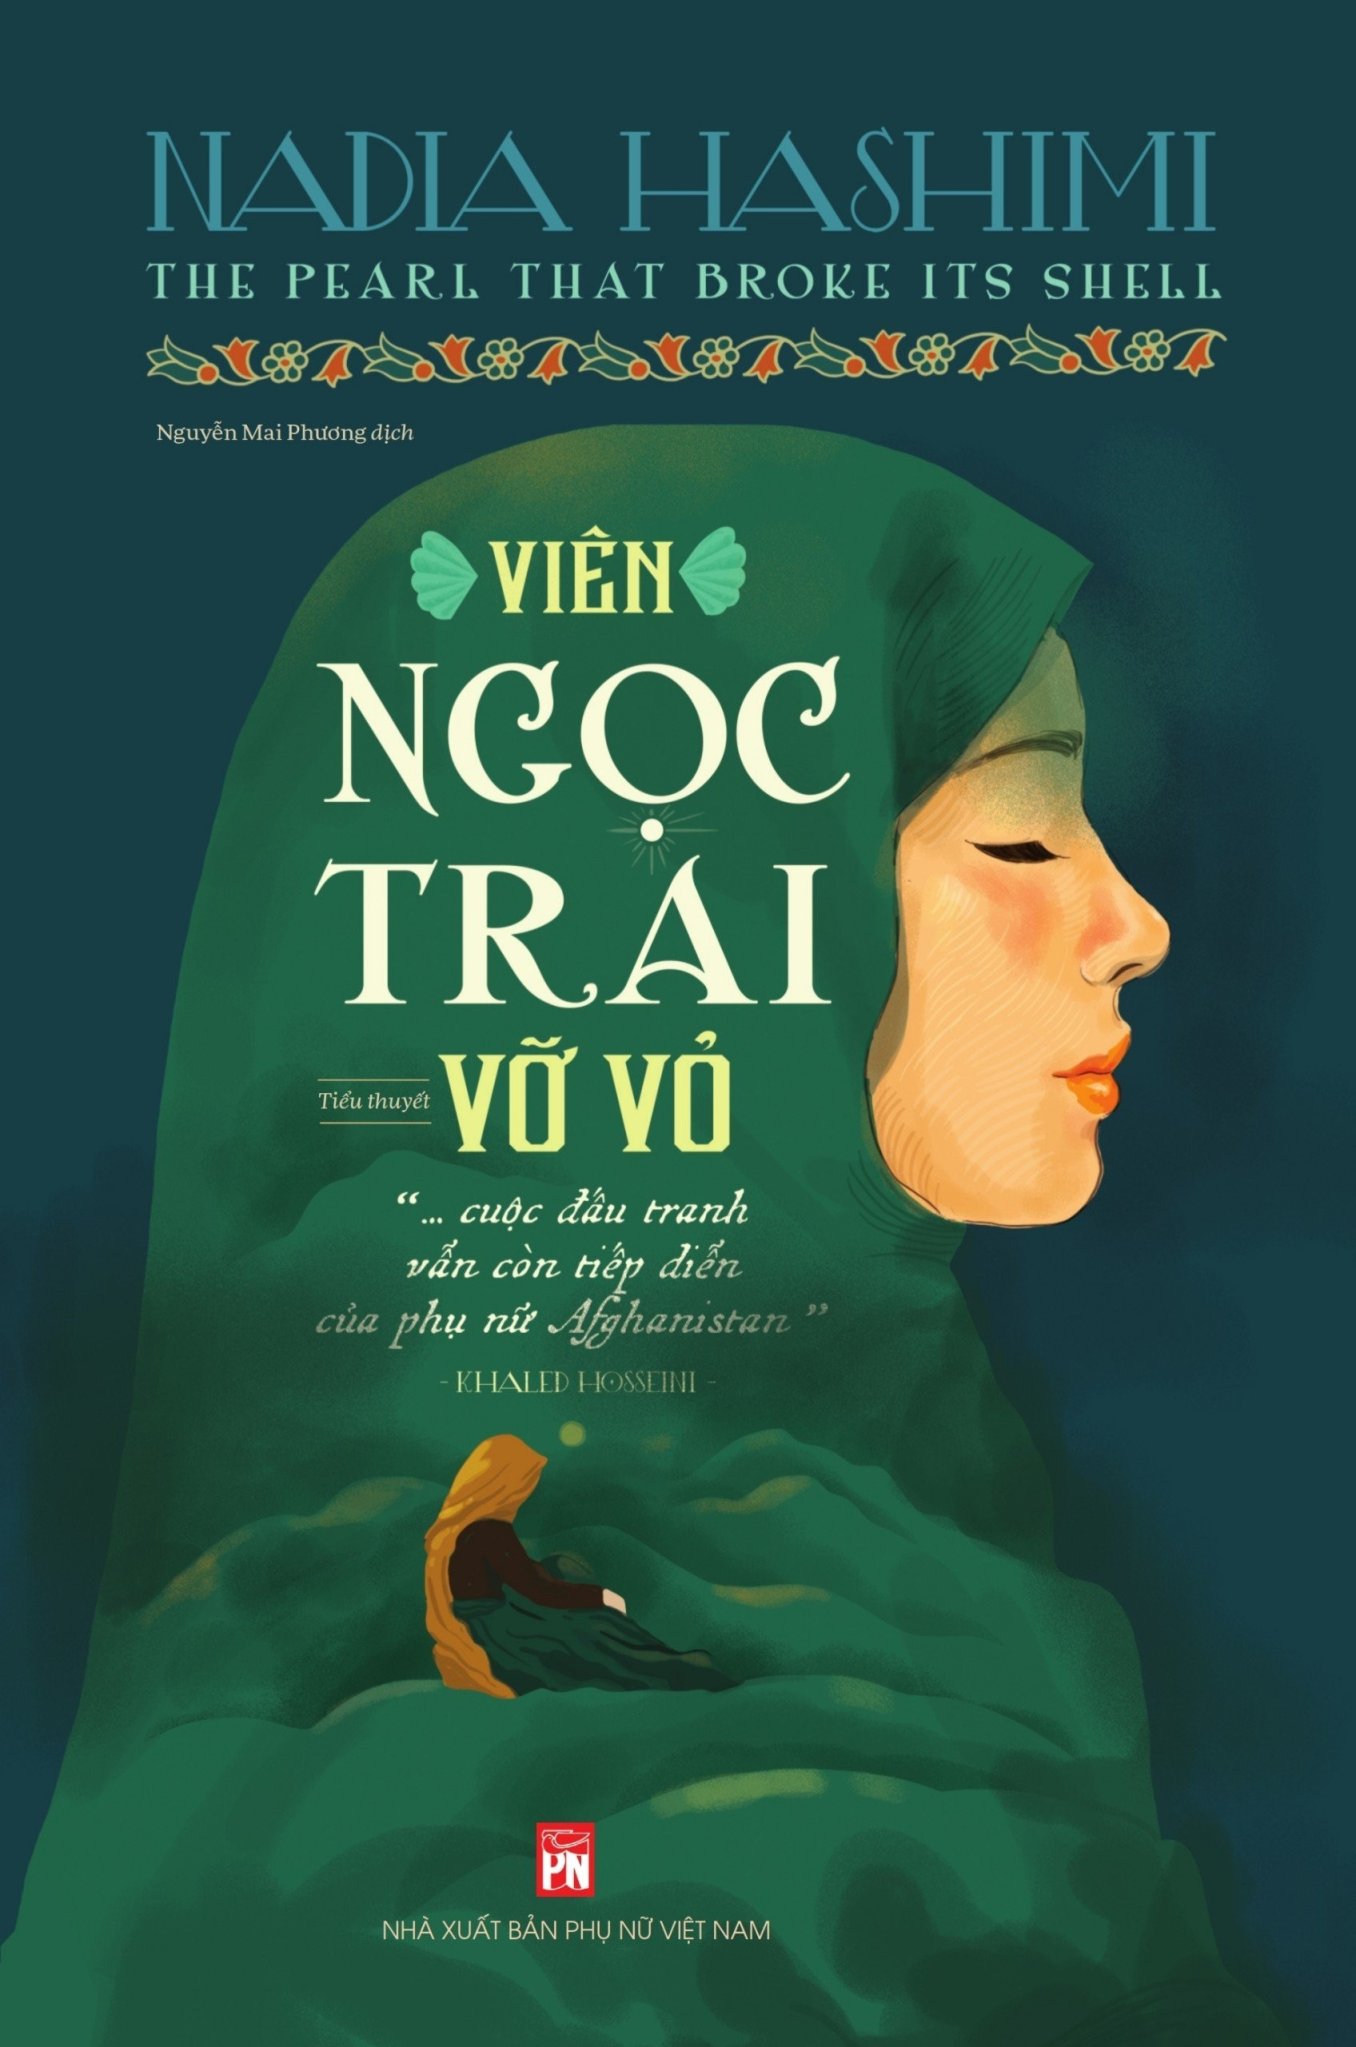 VIÊN NGỌC TRAI VỠ VỎ (The Pearl That Broke Its Shell) - Nadia Hashimi - Nguyễn Mai Phương dịch - (bìa mềm)